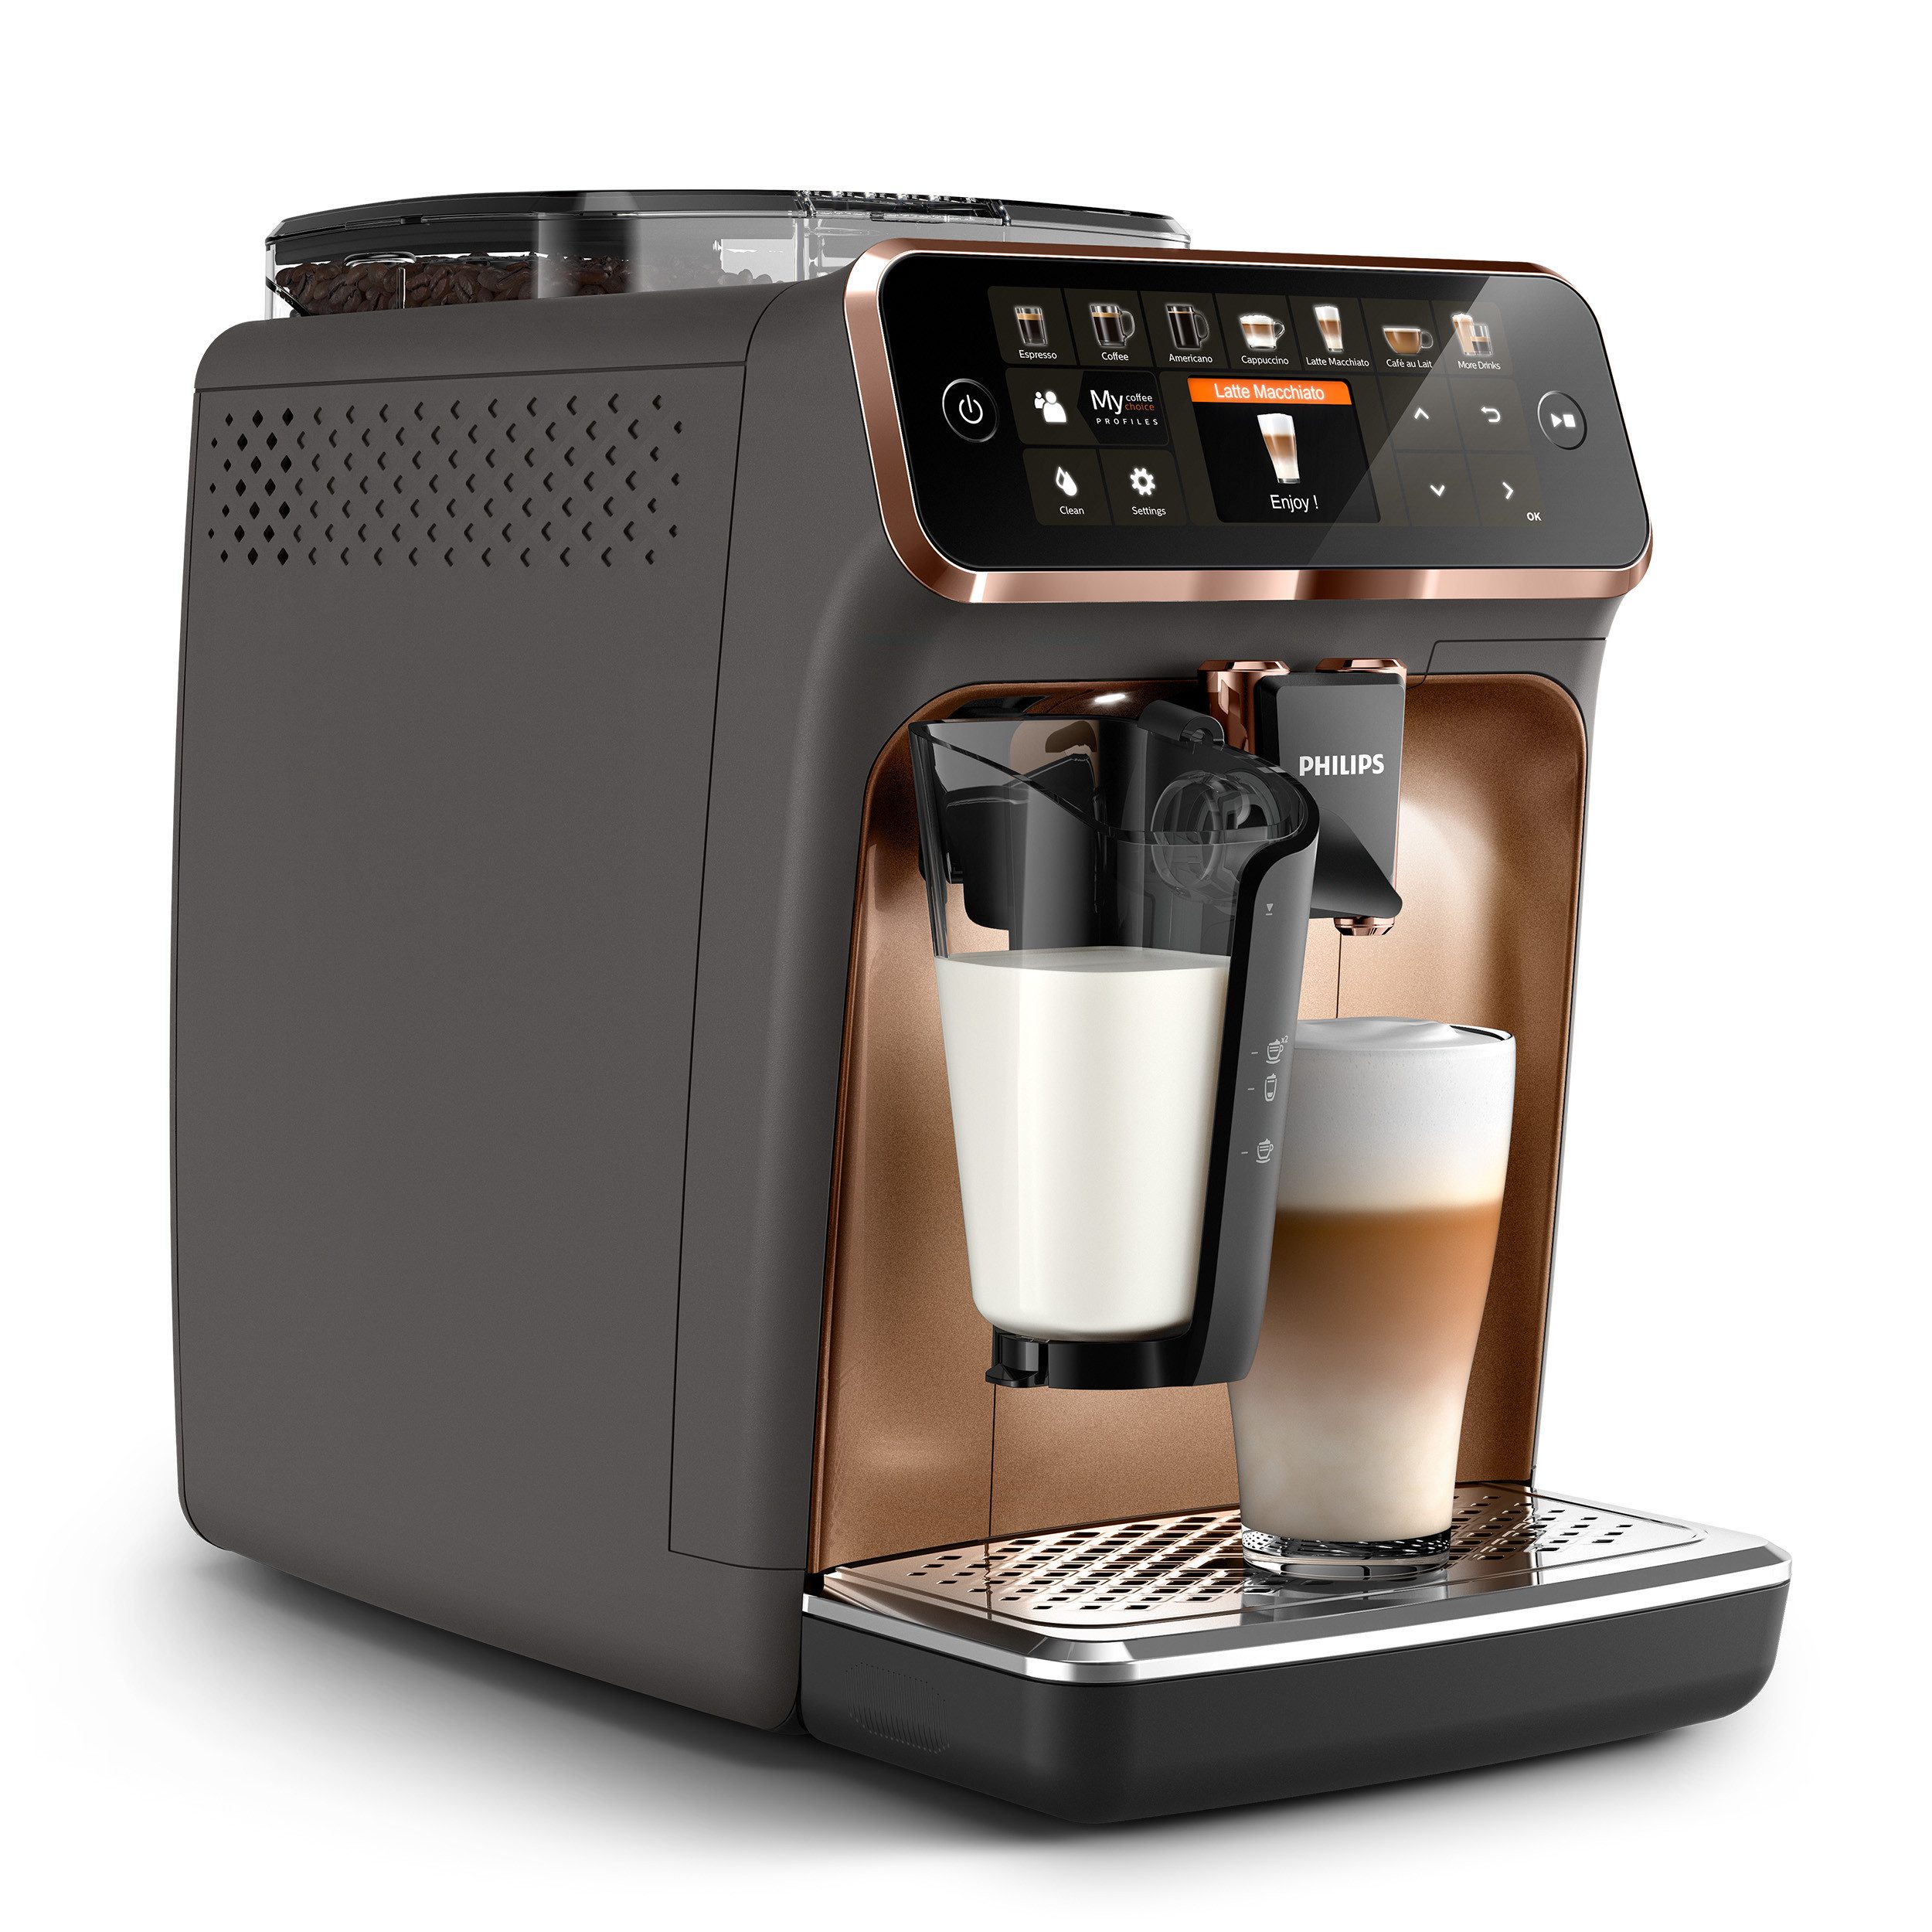 Philips Kaffeevollautomat 5400 Series EP5144/70, mit LatteGo-Milchsystem, 12 Kaffeespezialitäten und 4 Benutzerprofilen; Grau/Kupfer verchromt